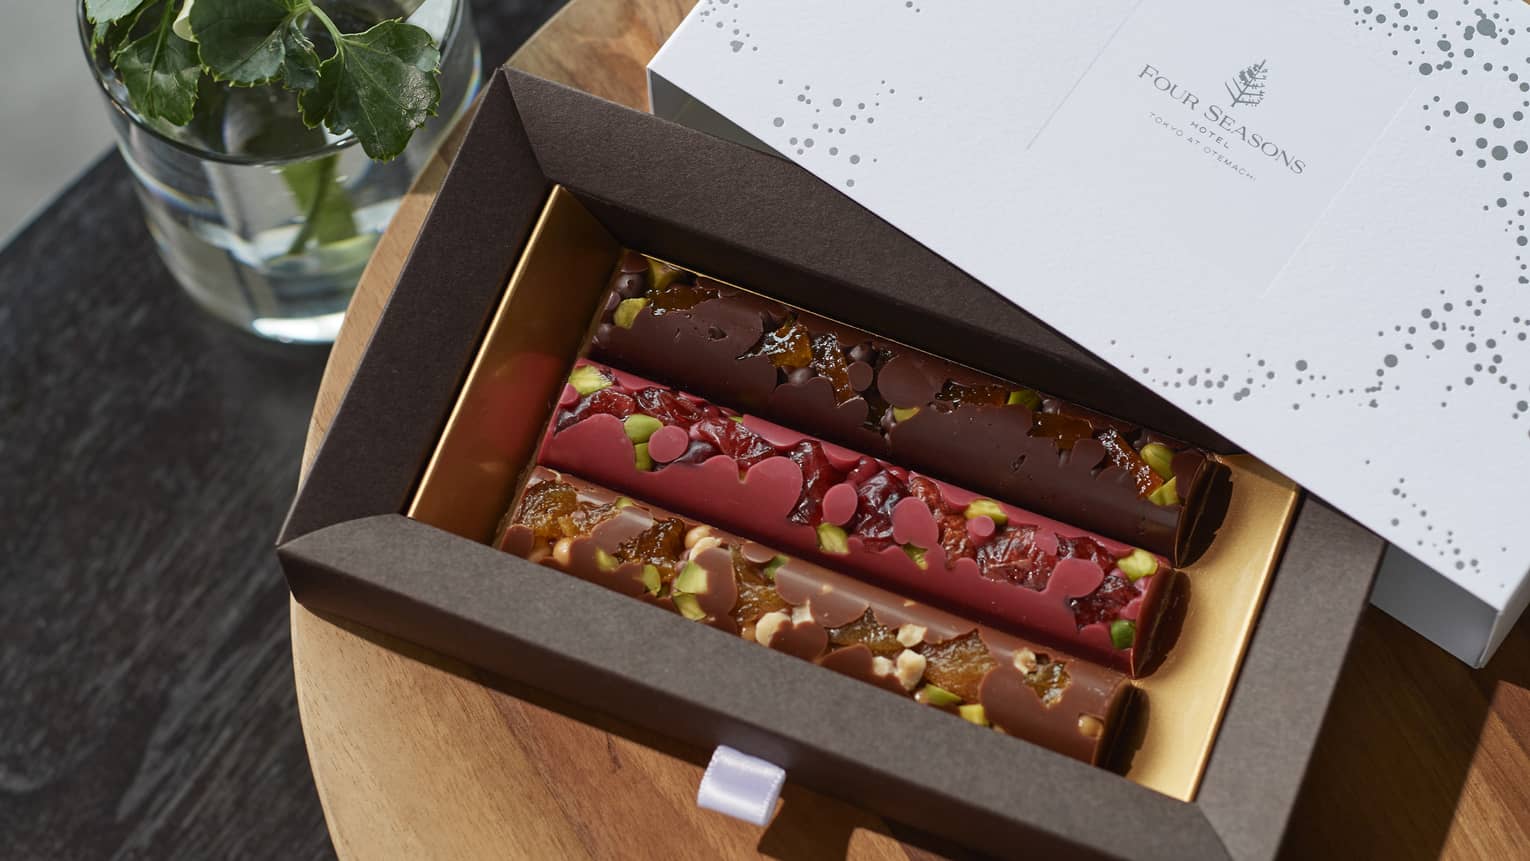 Dark Chocolate, Raspberry Chocolate and Milk Chocolate mendiants bar gift box